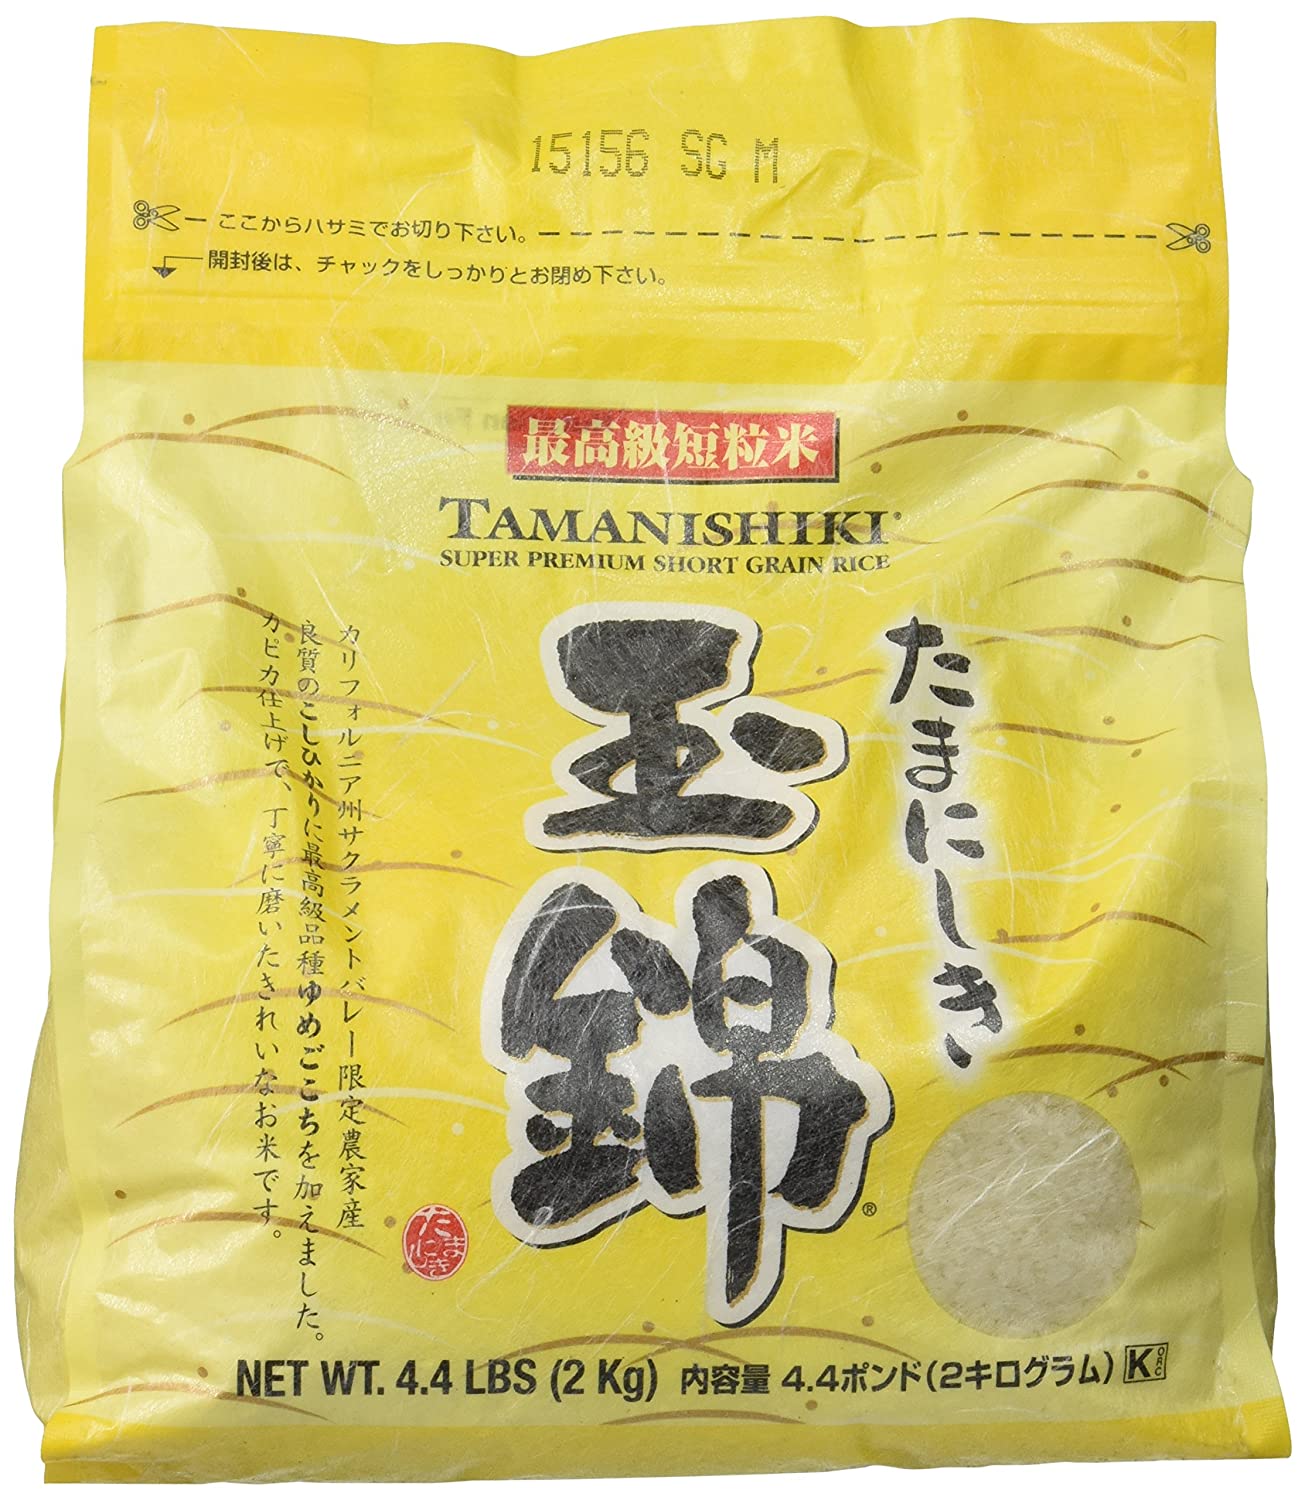 Tamanishiki Super Premium Short Grain Rice, 4.4-Pounds $8.92 amazon s&s - $8.92